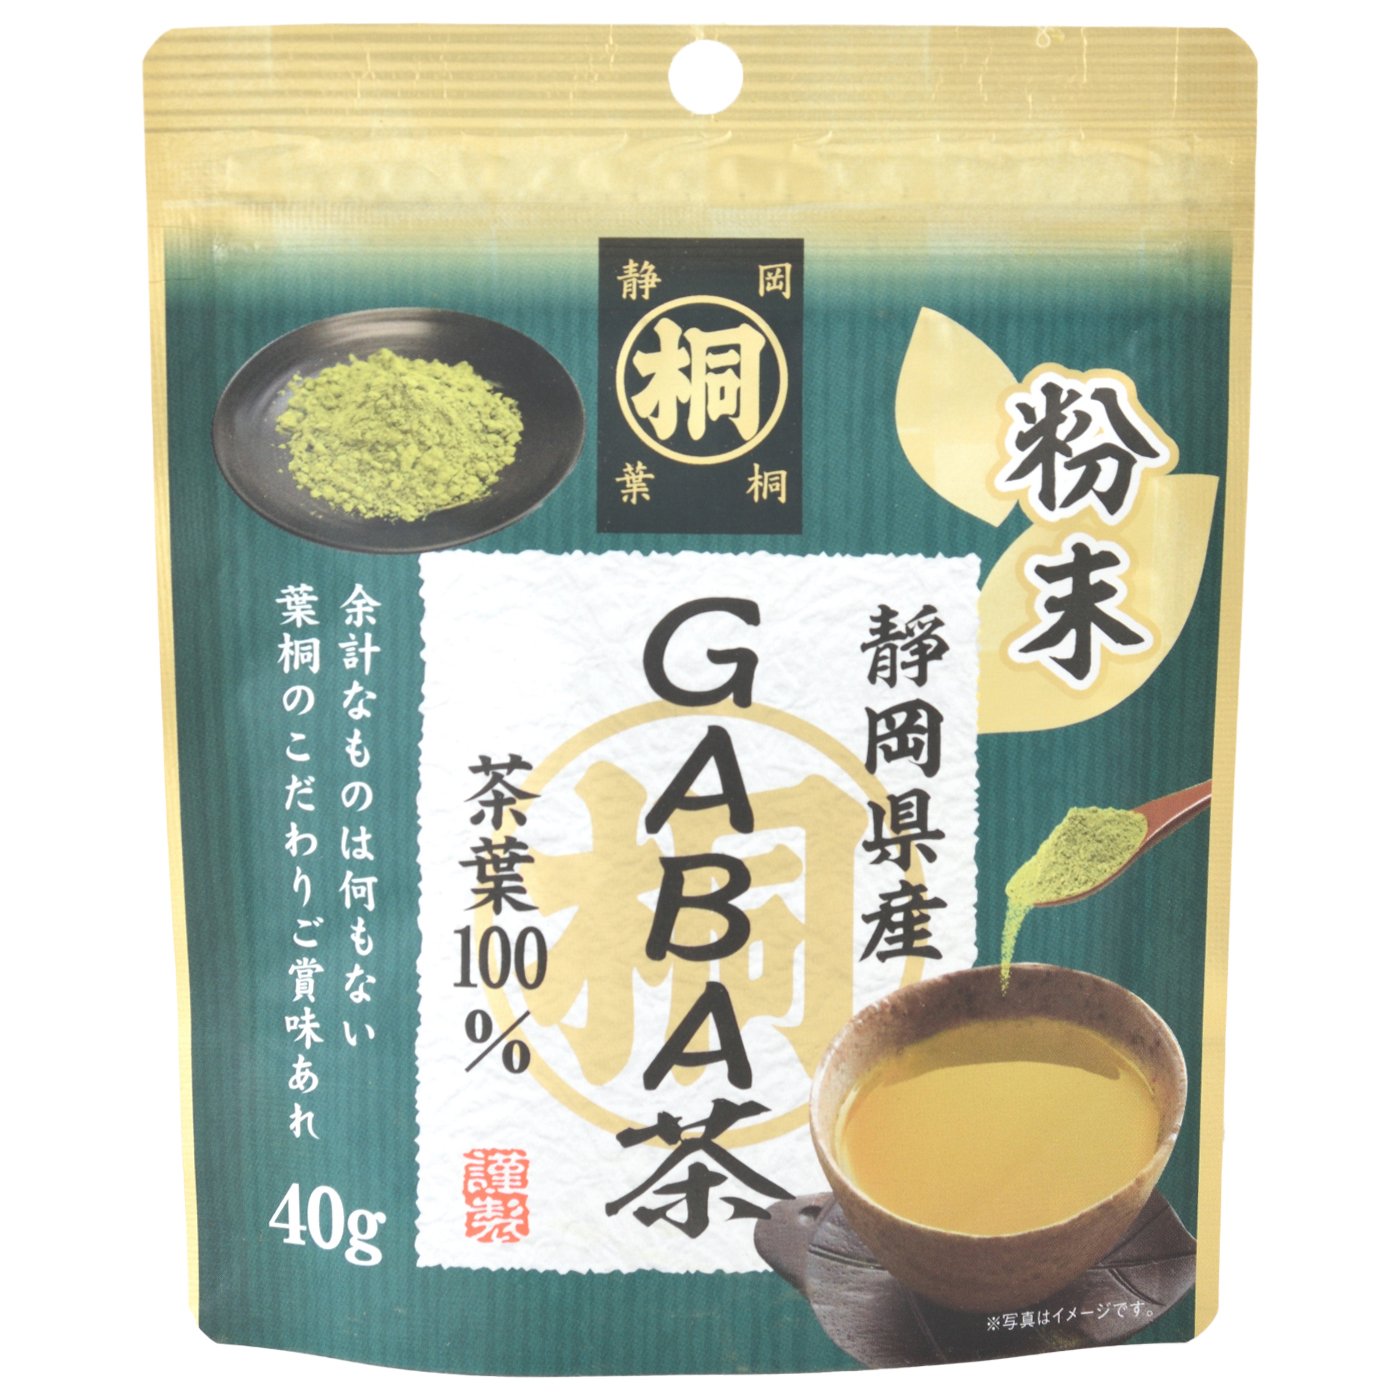 静岡産マル桐粉末GABA茶 40g